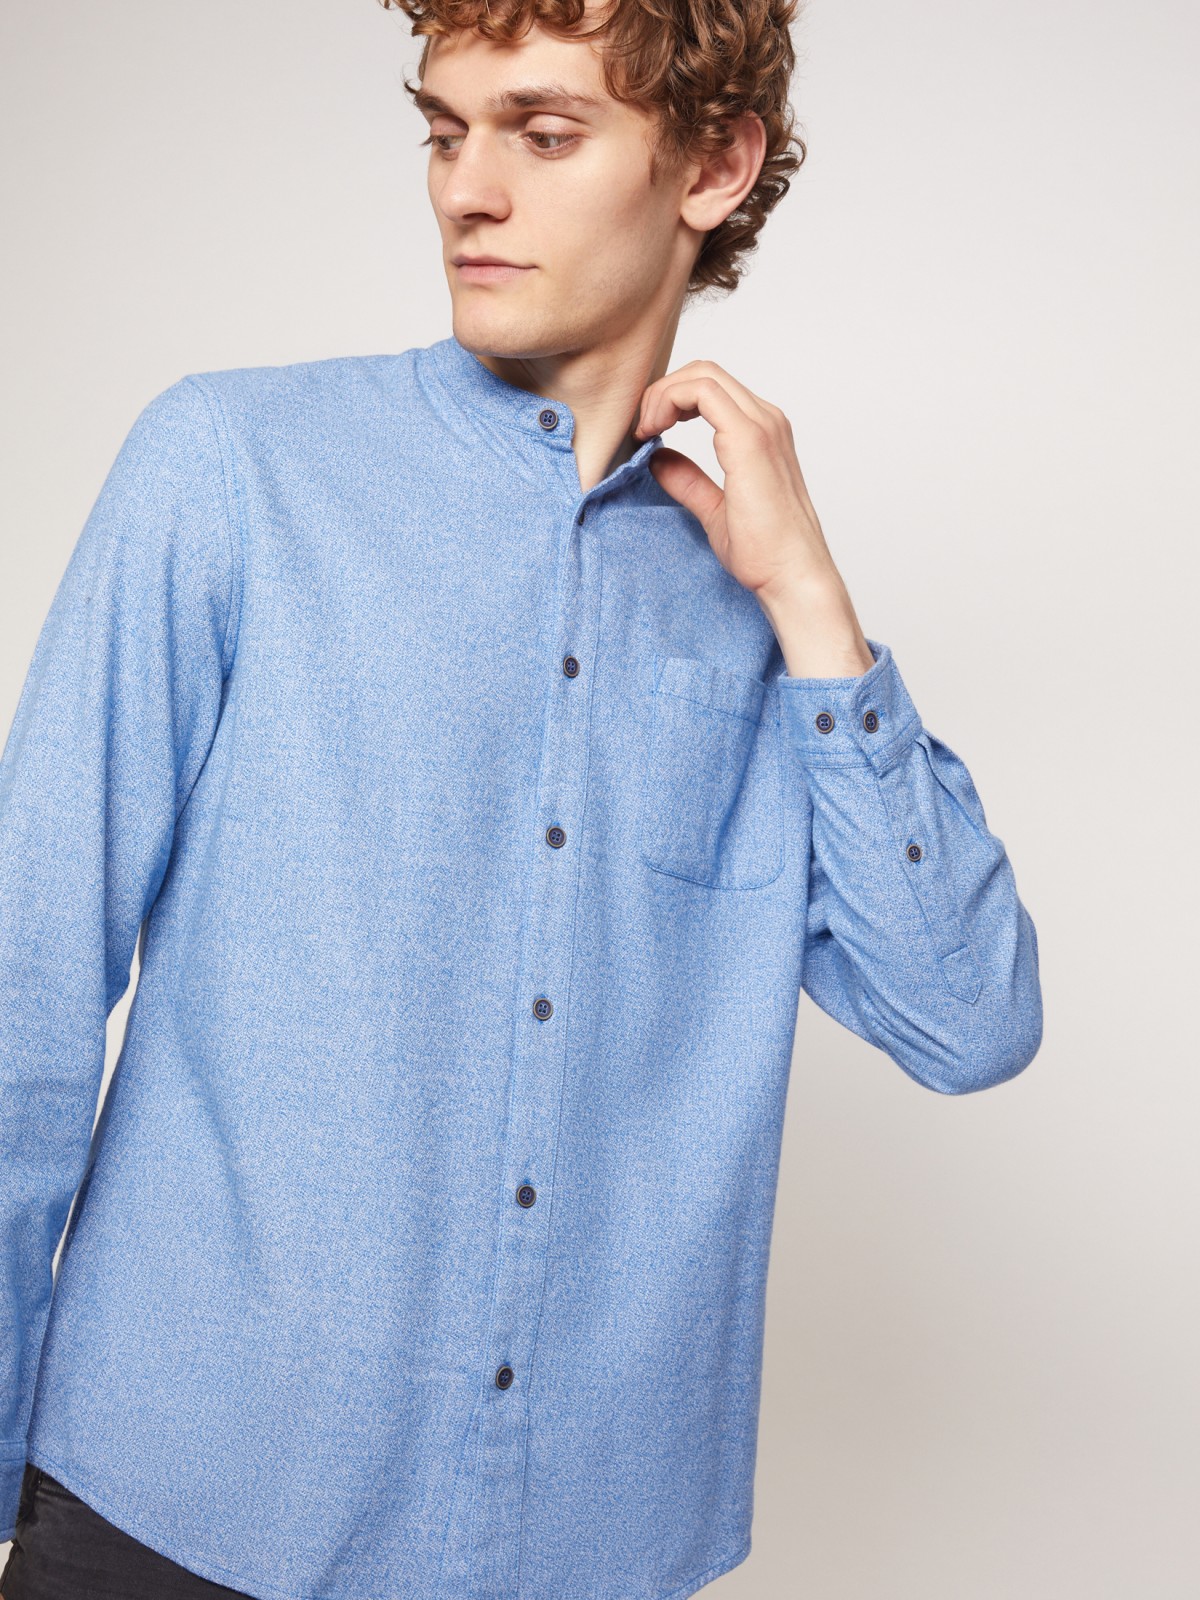 Фланелевая рубашка с воротником-стойкой zolla 211342191021, цвет голубой, размер S - фото 4